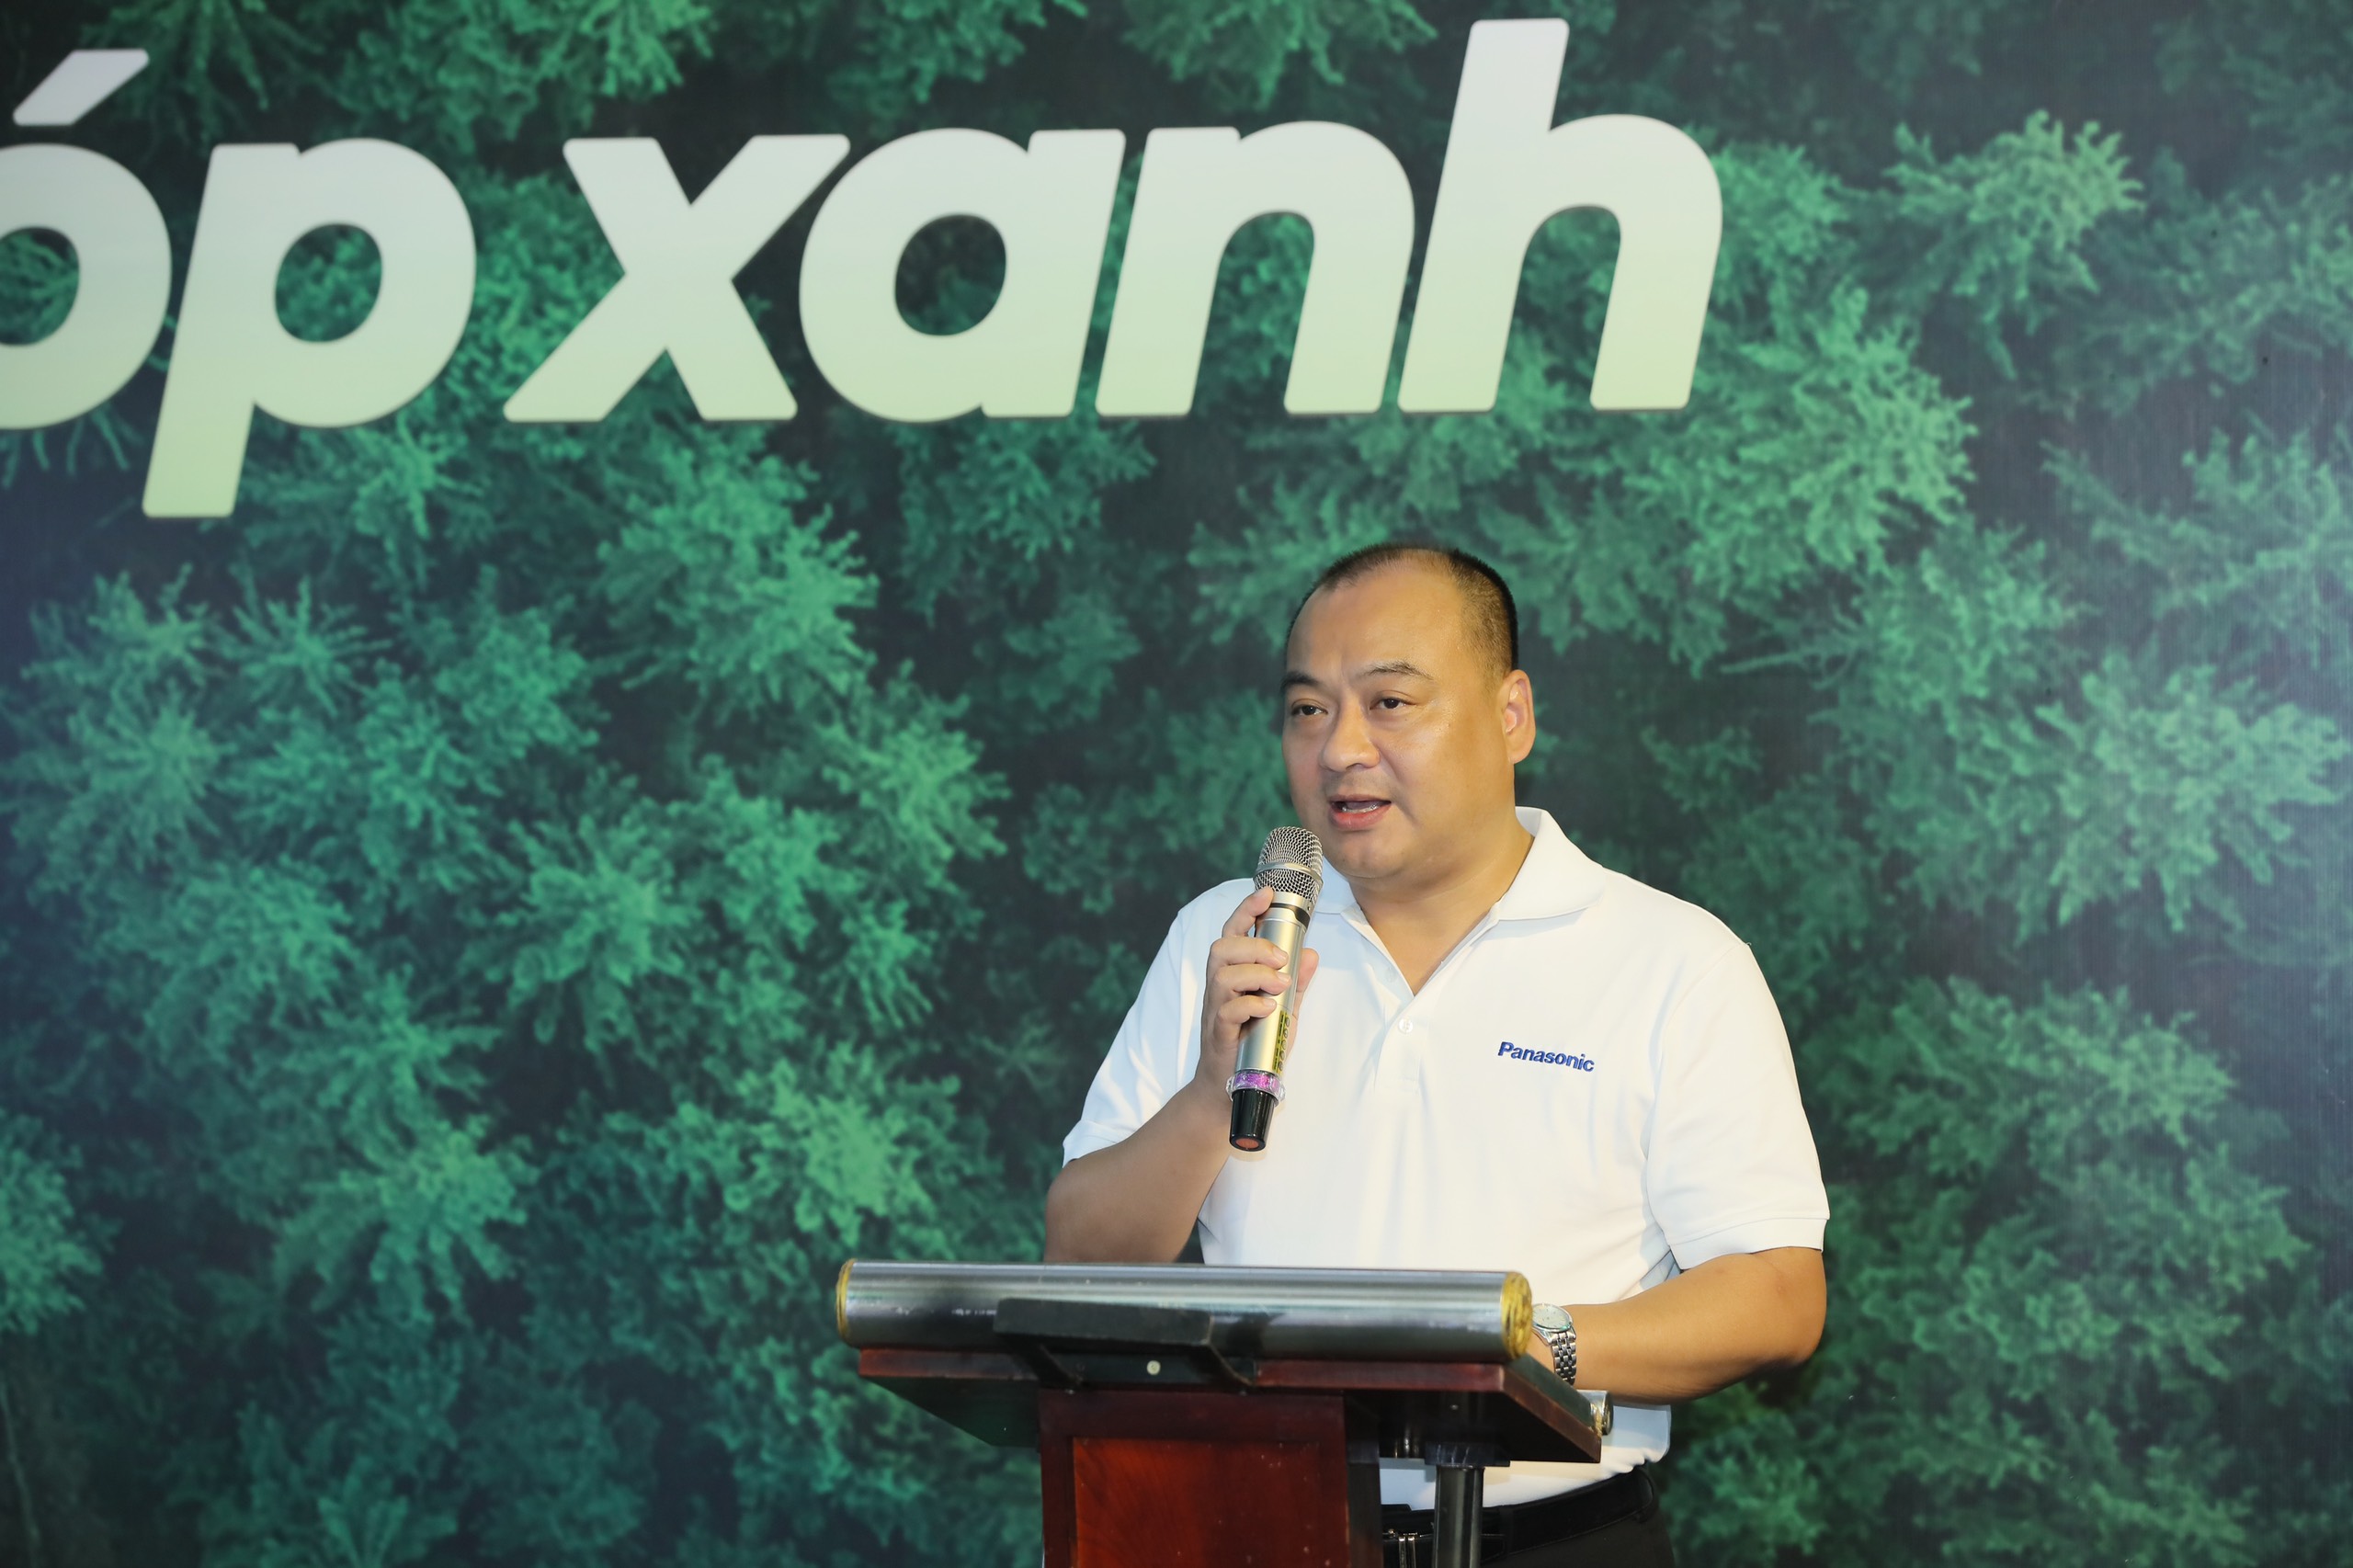 Panasonic khởi động chương trình trồng rừng “Sống khỏe góp xanh” chung sức trồng 1 tỷ cây xanh – vì một Việt Nam xanh - 3